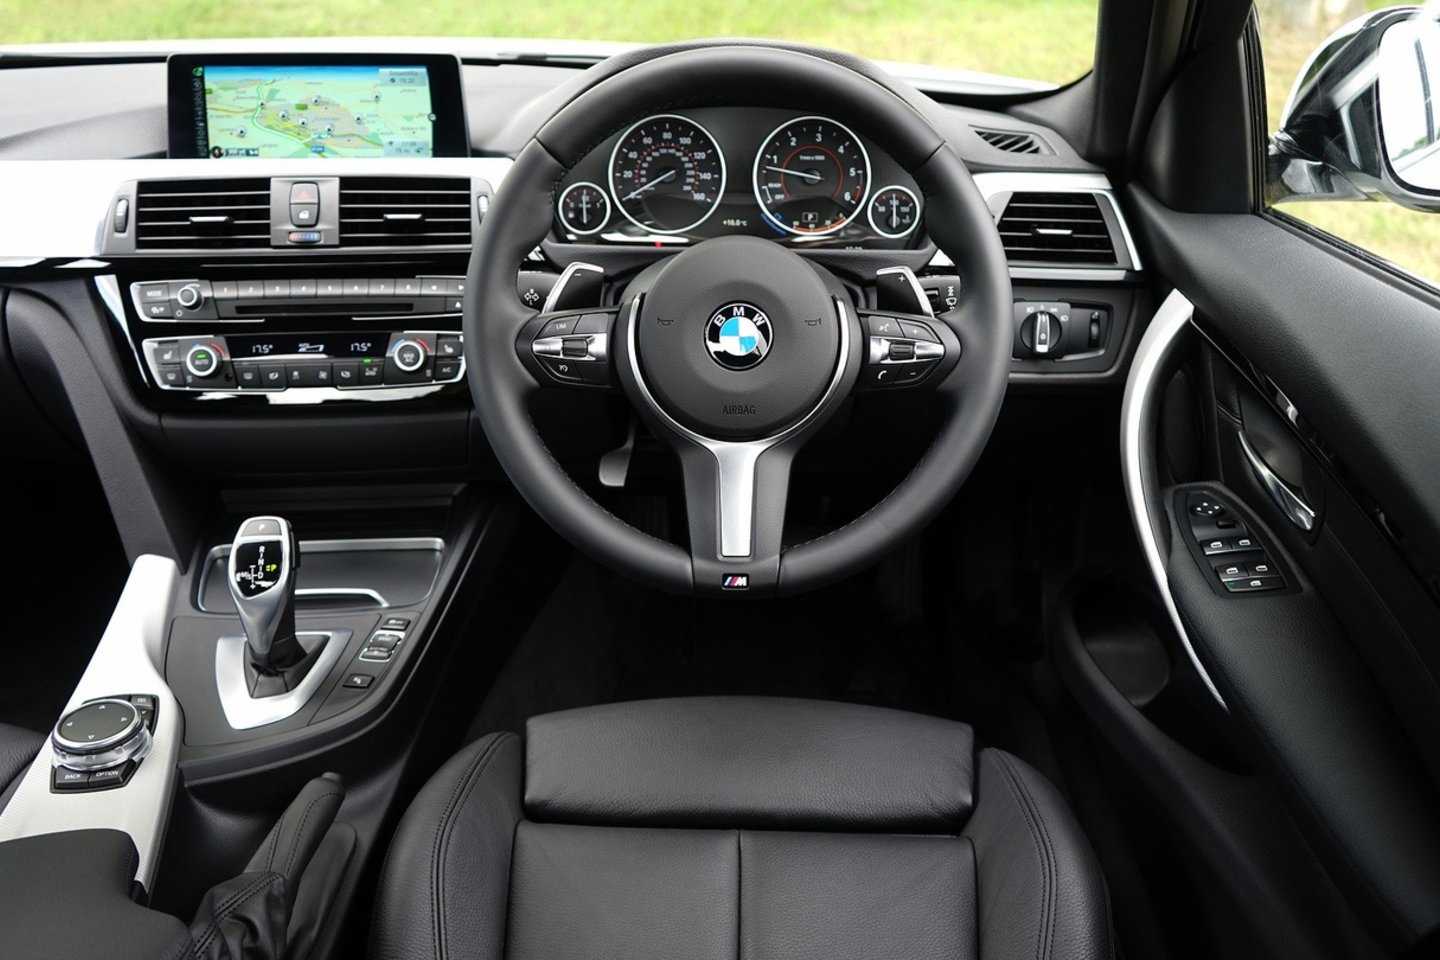 Vokietijos BMW kompanija ketina artimiausiu metu pereiti prie taip vadinamų tiesioginių automobilių pardavimų ir ateityje visai atsisakyti salonų.<br>www.pixabay.com nuotr.